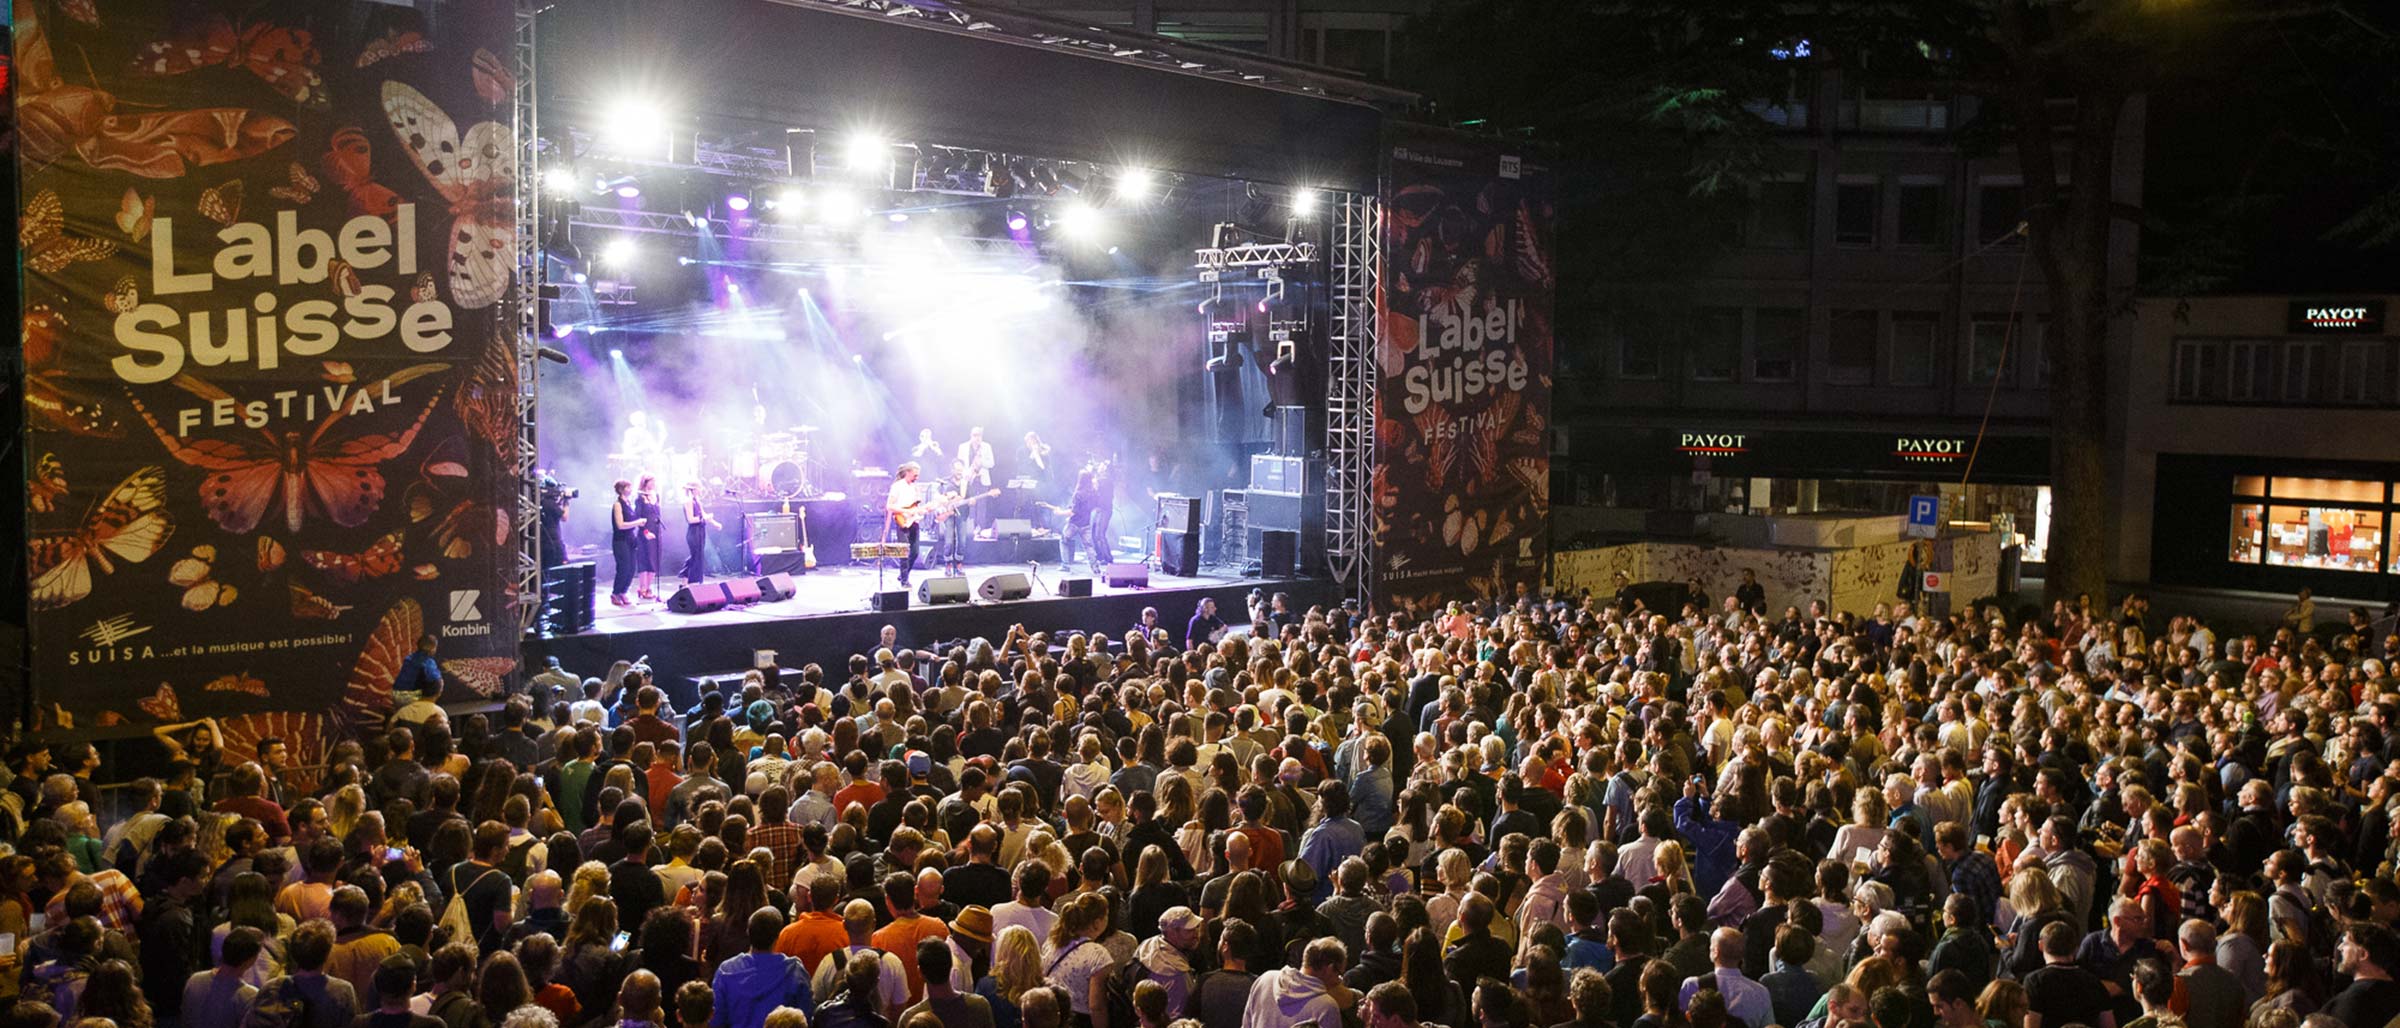 Festival Label Suisse: Eine große Bühne, auf der ein Konzert stattfindet, davor das Publikum